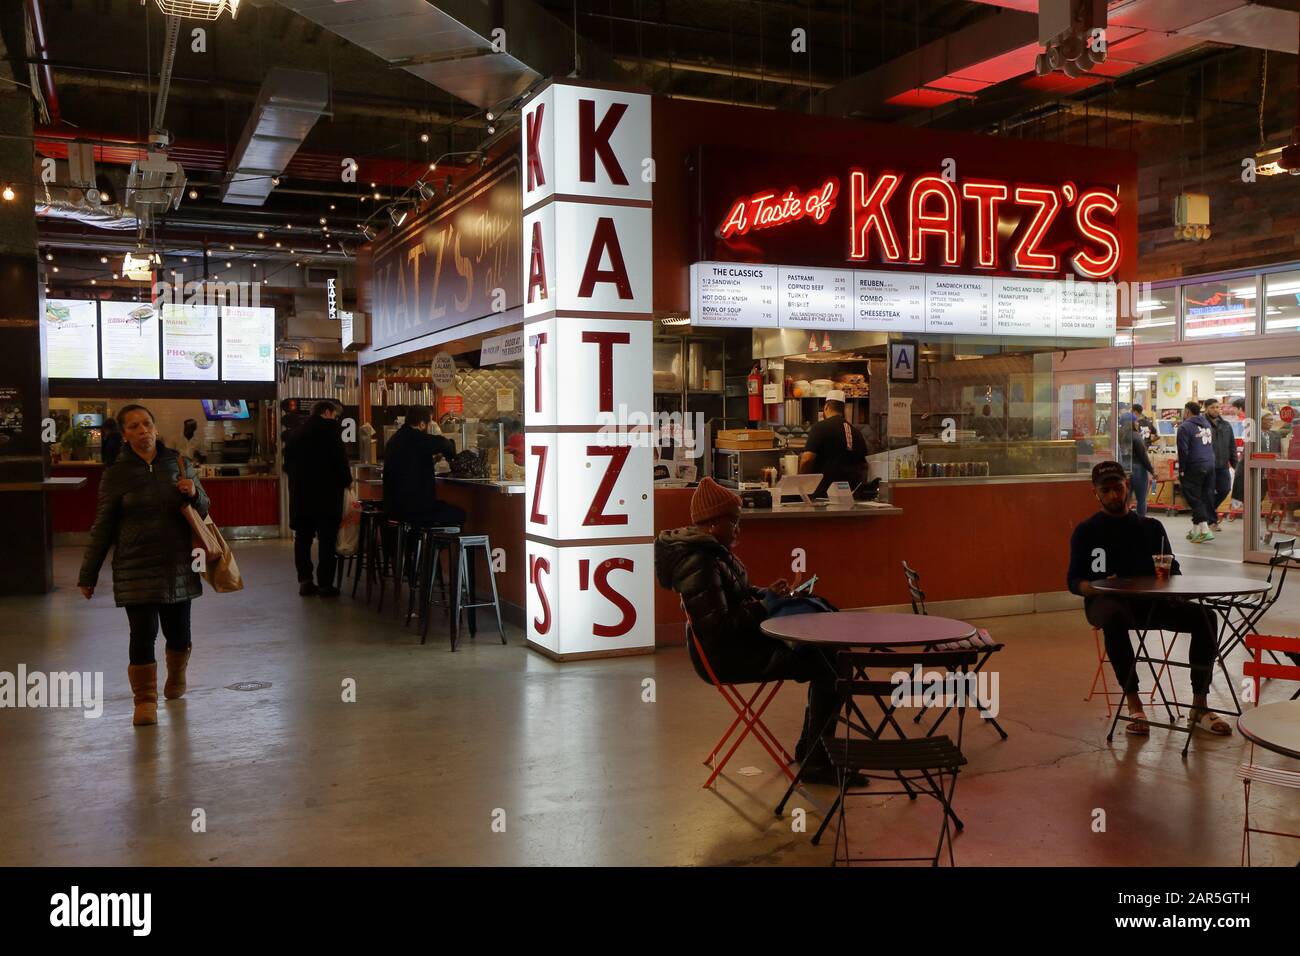 Un Avant-Goût de Katz's au DeKalb Market Hall de Brooklyn, NY. Banque D'Images